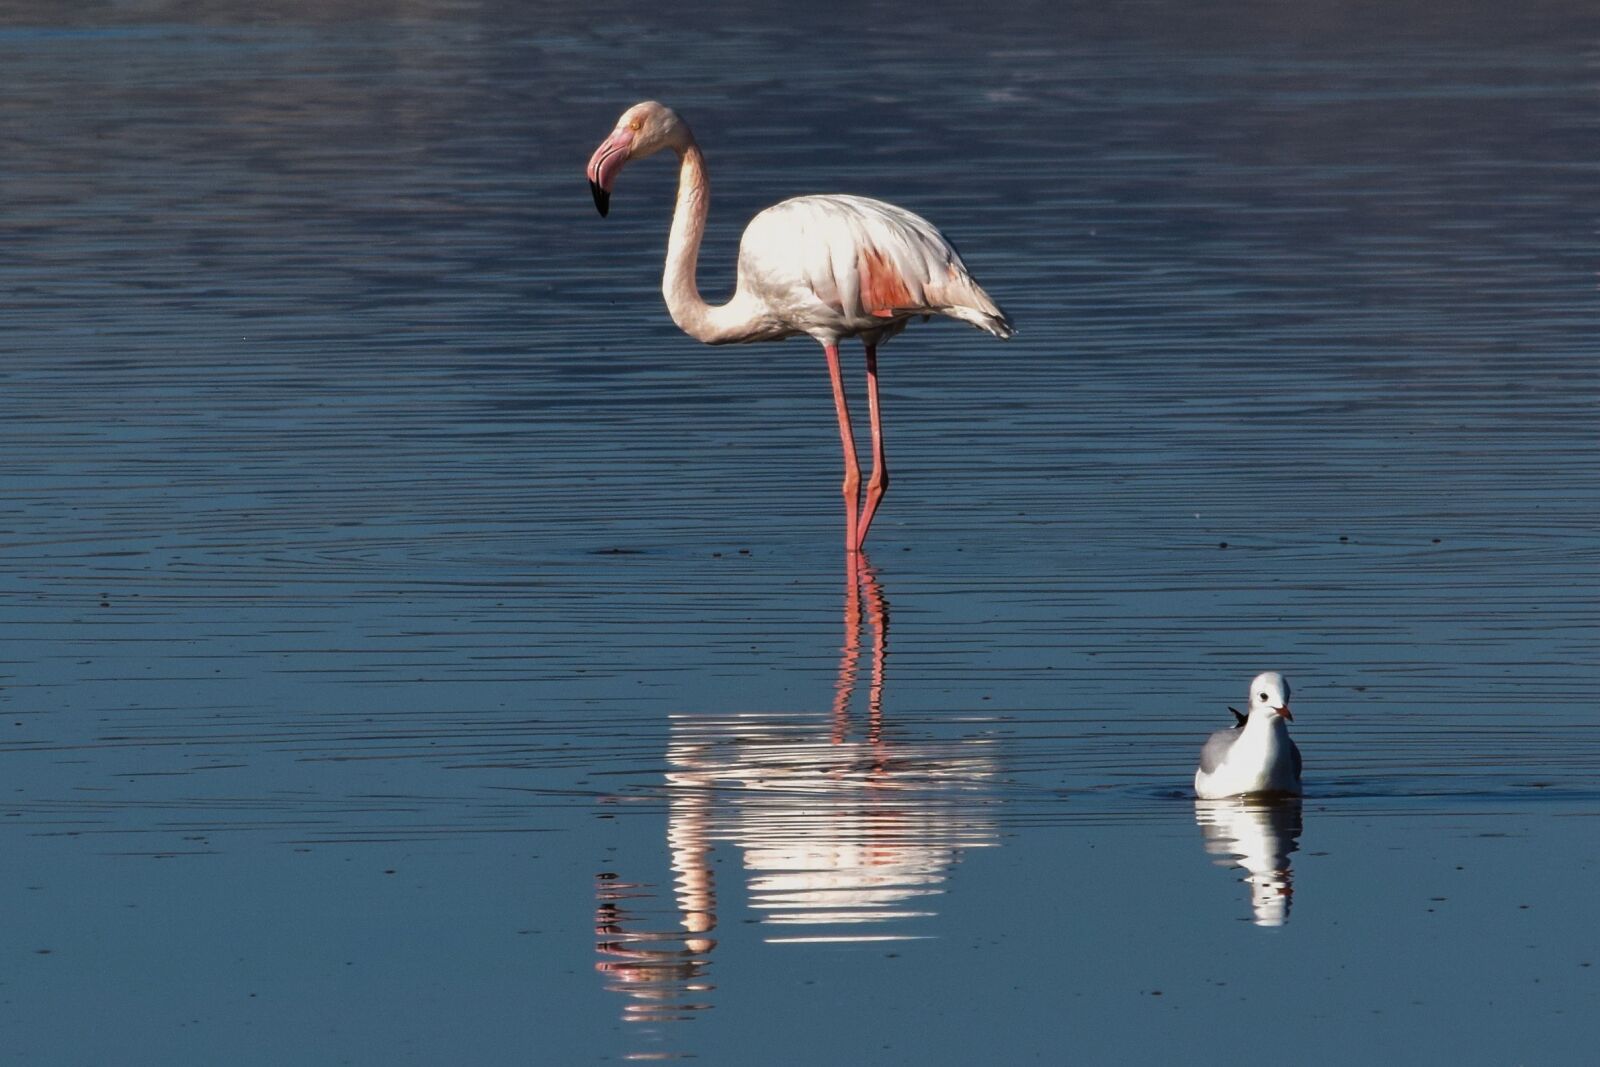 Nikon D3300 sample photo. Flamingo, bird, water photography